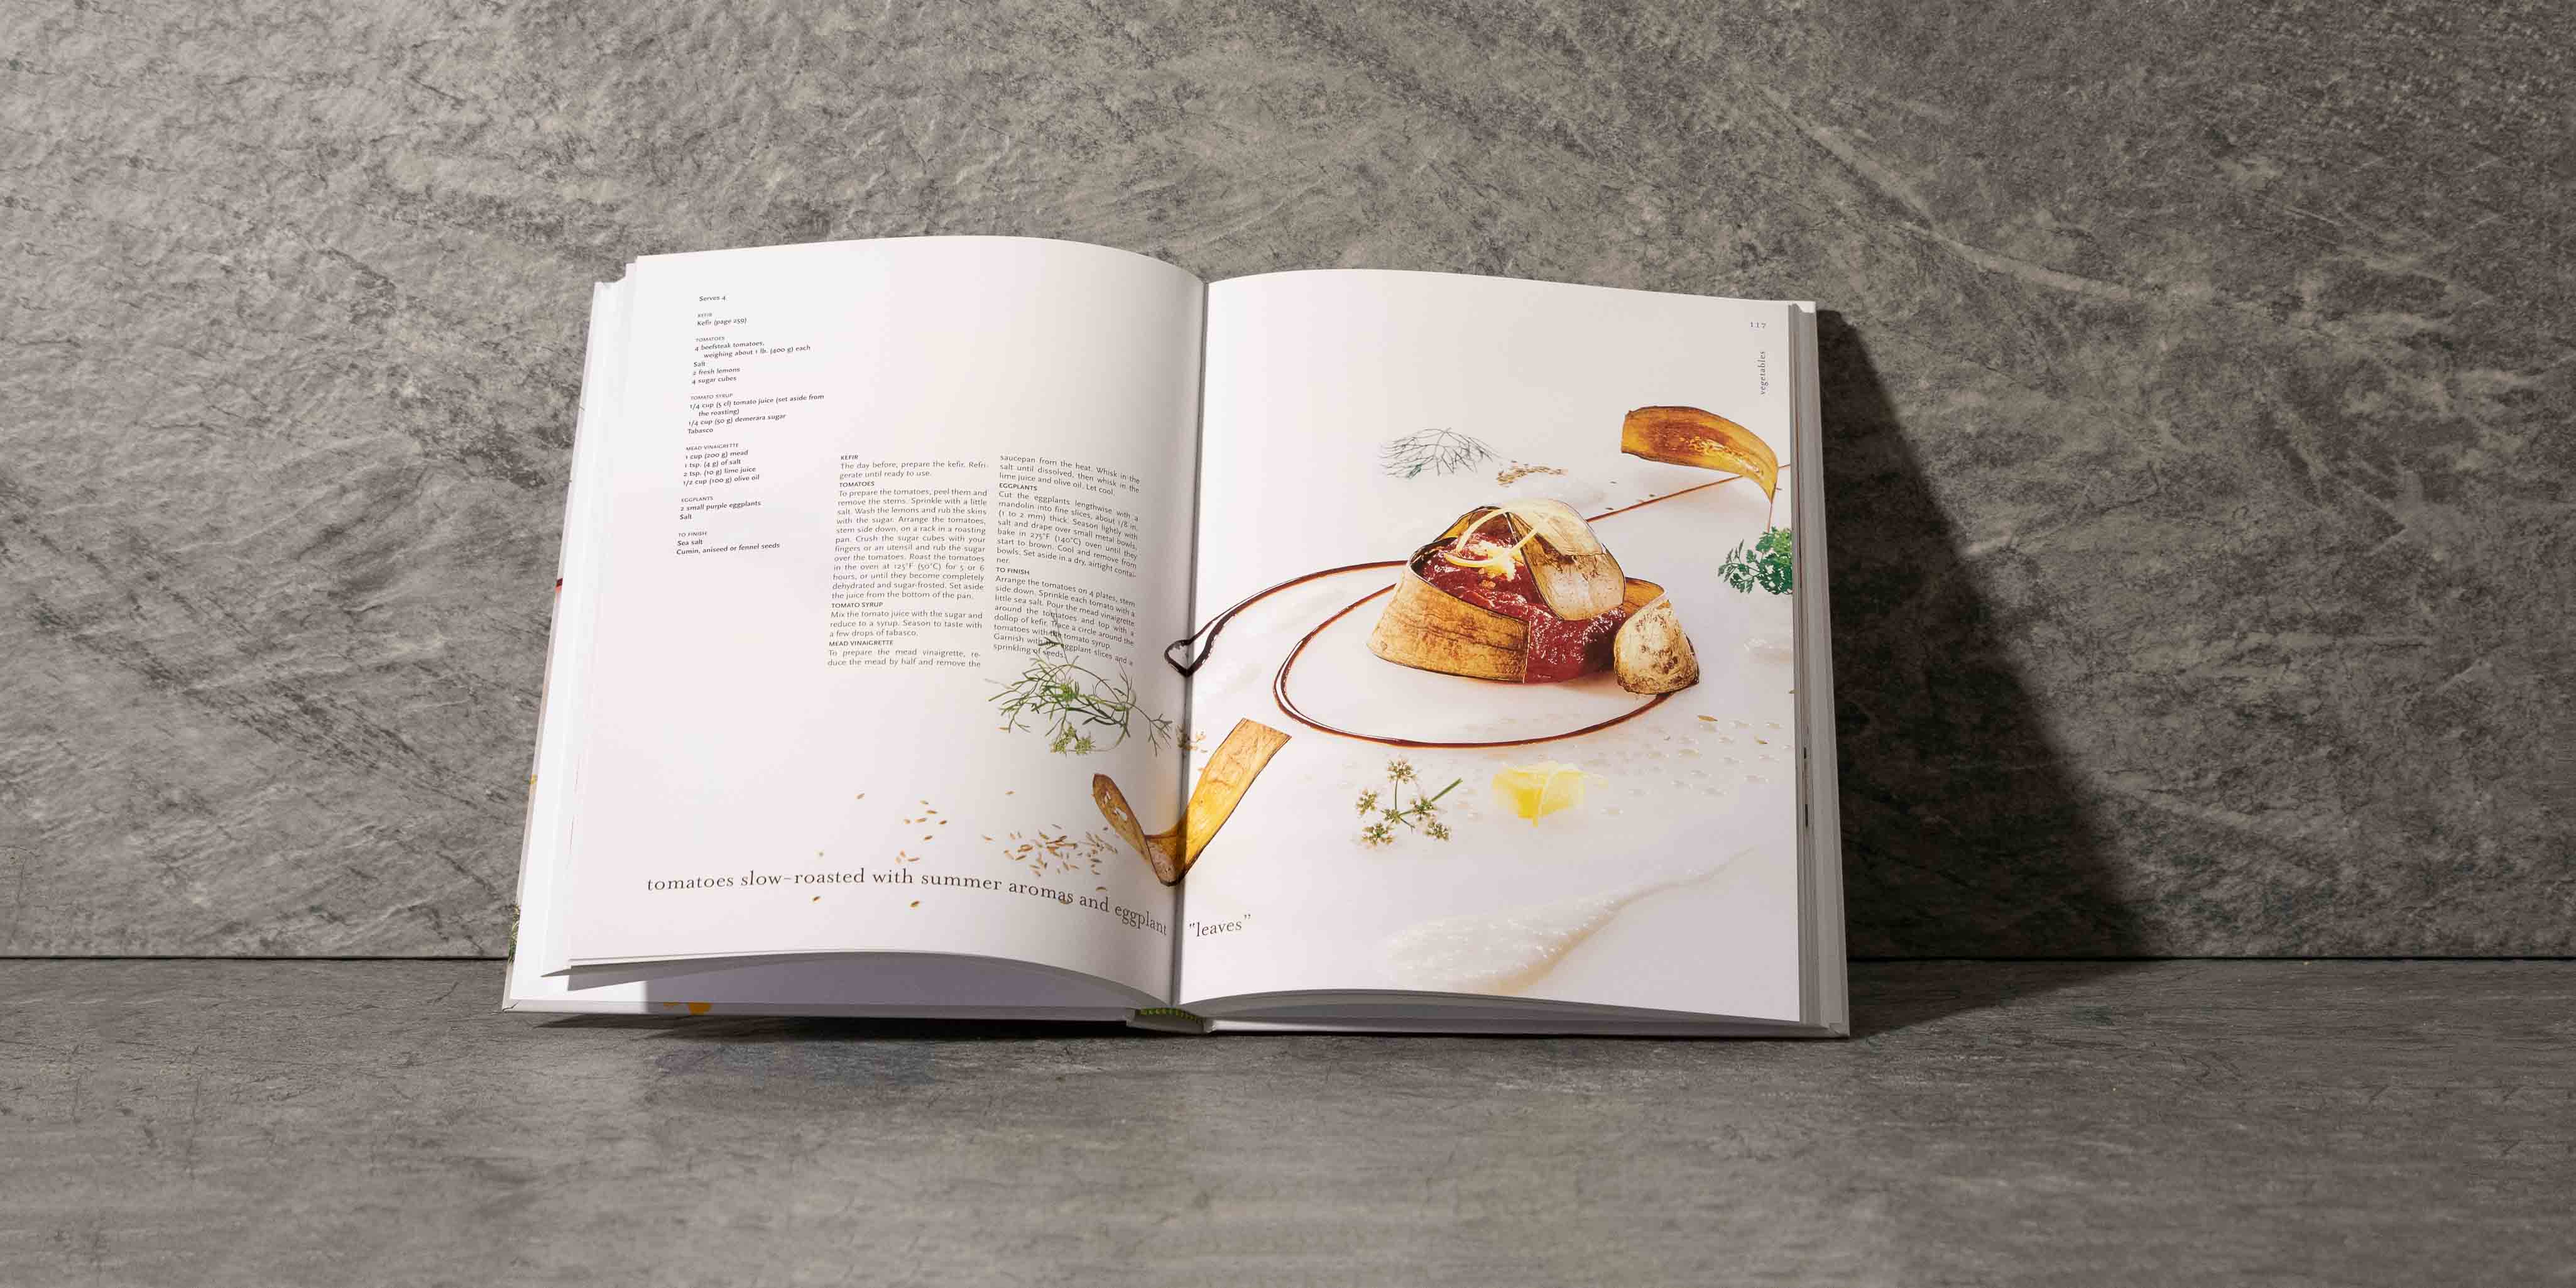 Essential cuisine MICHEL BRAS Laguiole Aubrac France - La boutique